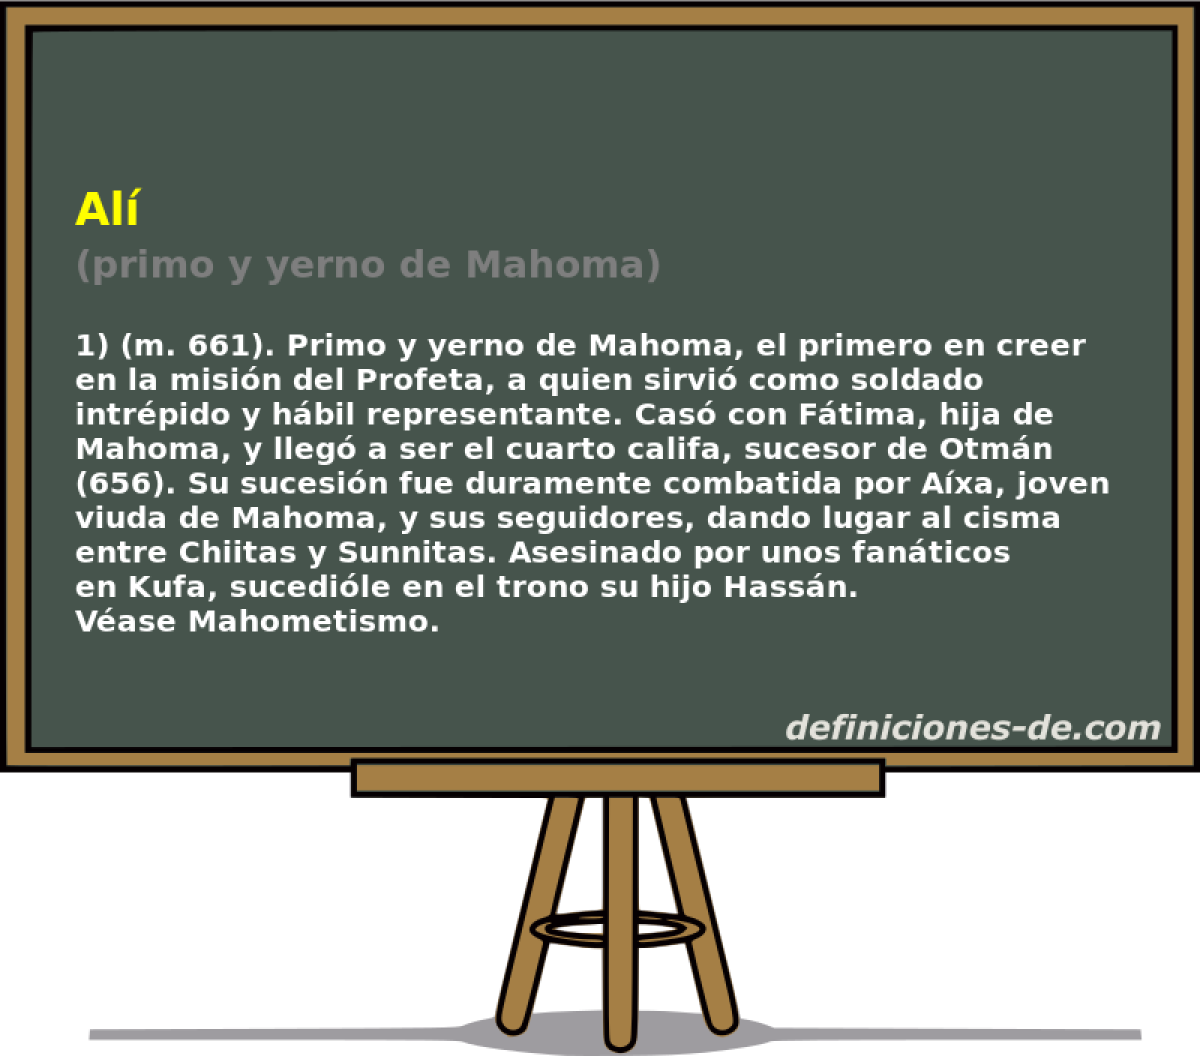 Al (primo y yerno de Mahoma)